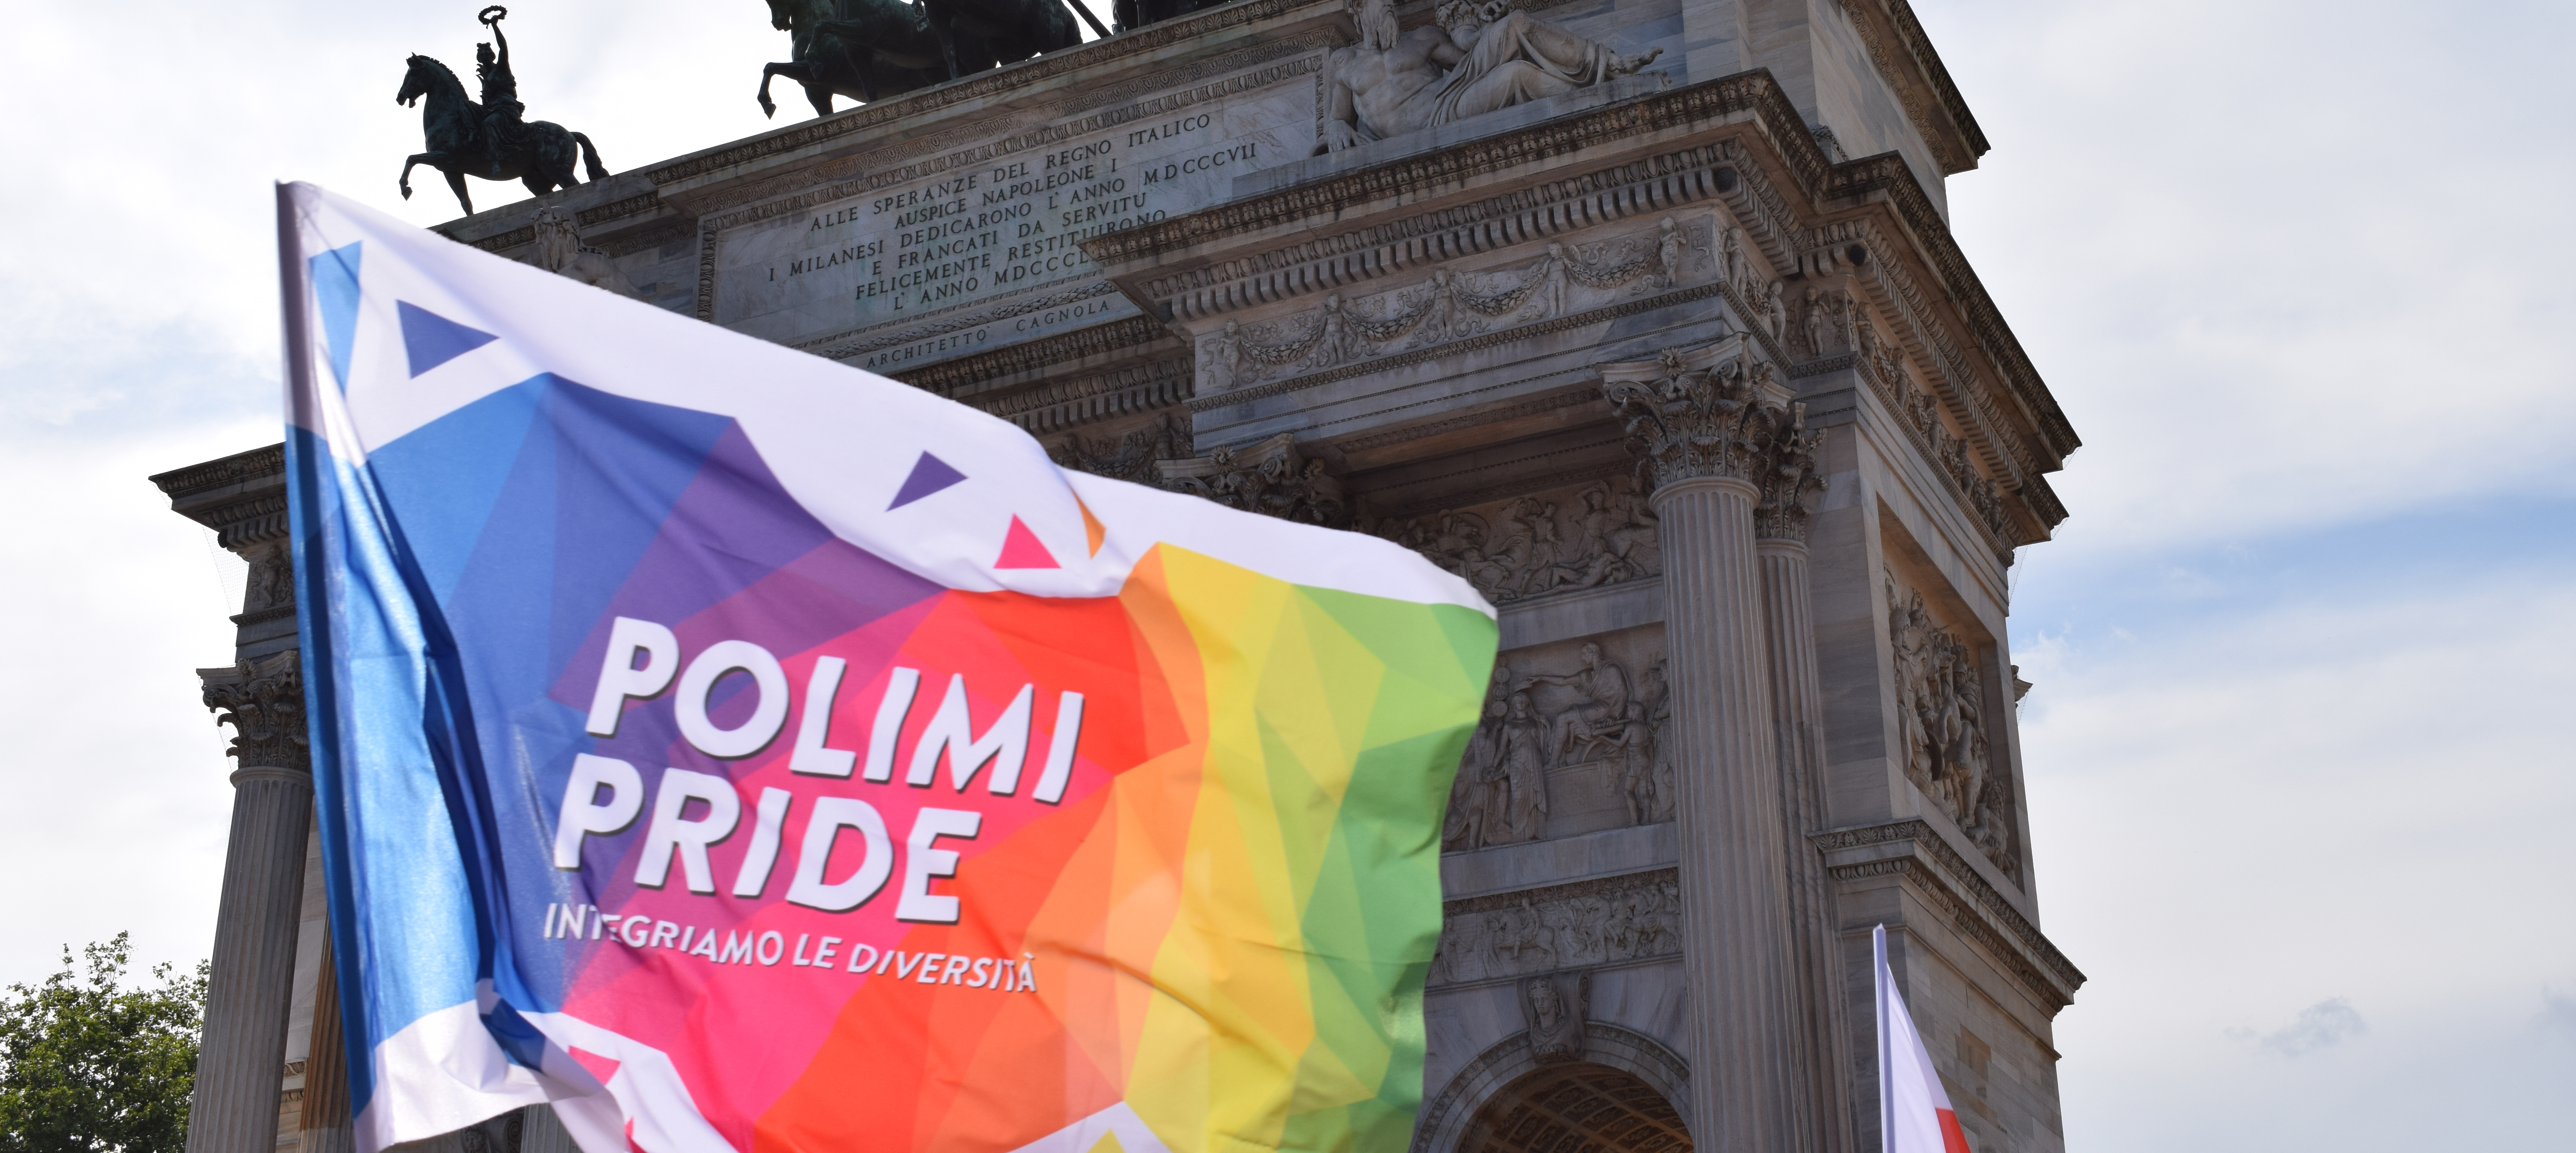 Polimi Pride flag at Arco della Pace during 2021 Milano Pride